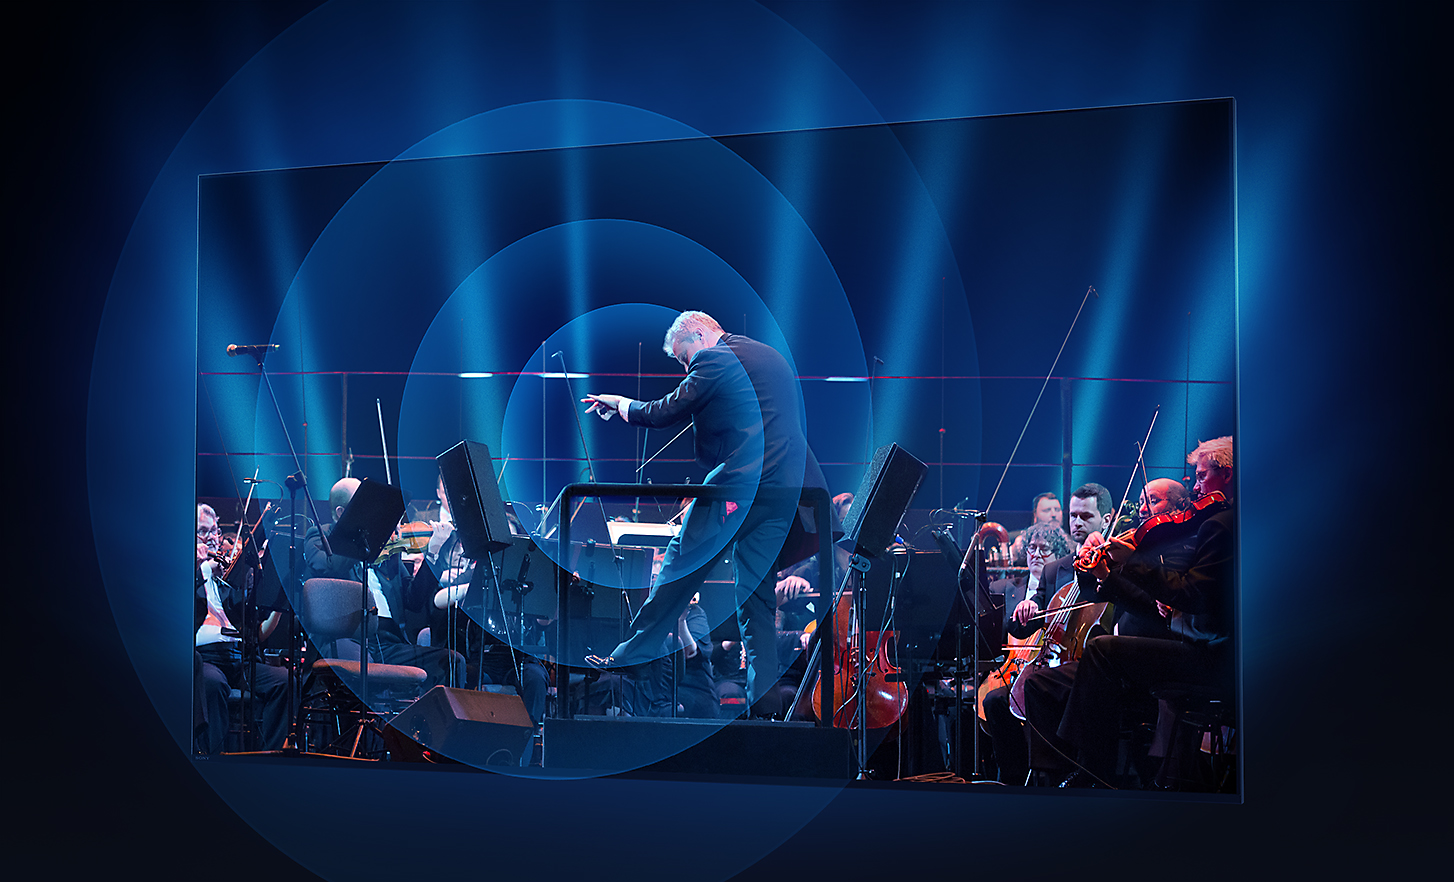 Obrazovka televizoru BRAVIA ukazující dirigenta a orchestr a zvukové vlny šířící se v soustředných kruzích od středu obrazovky